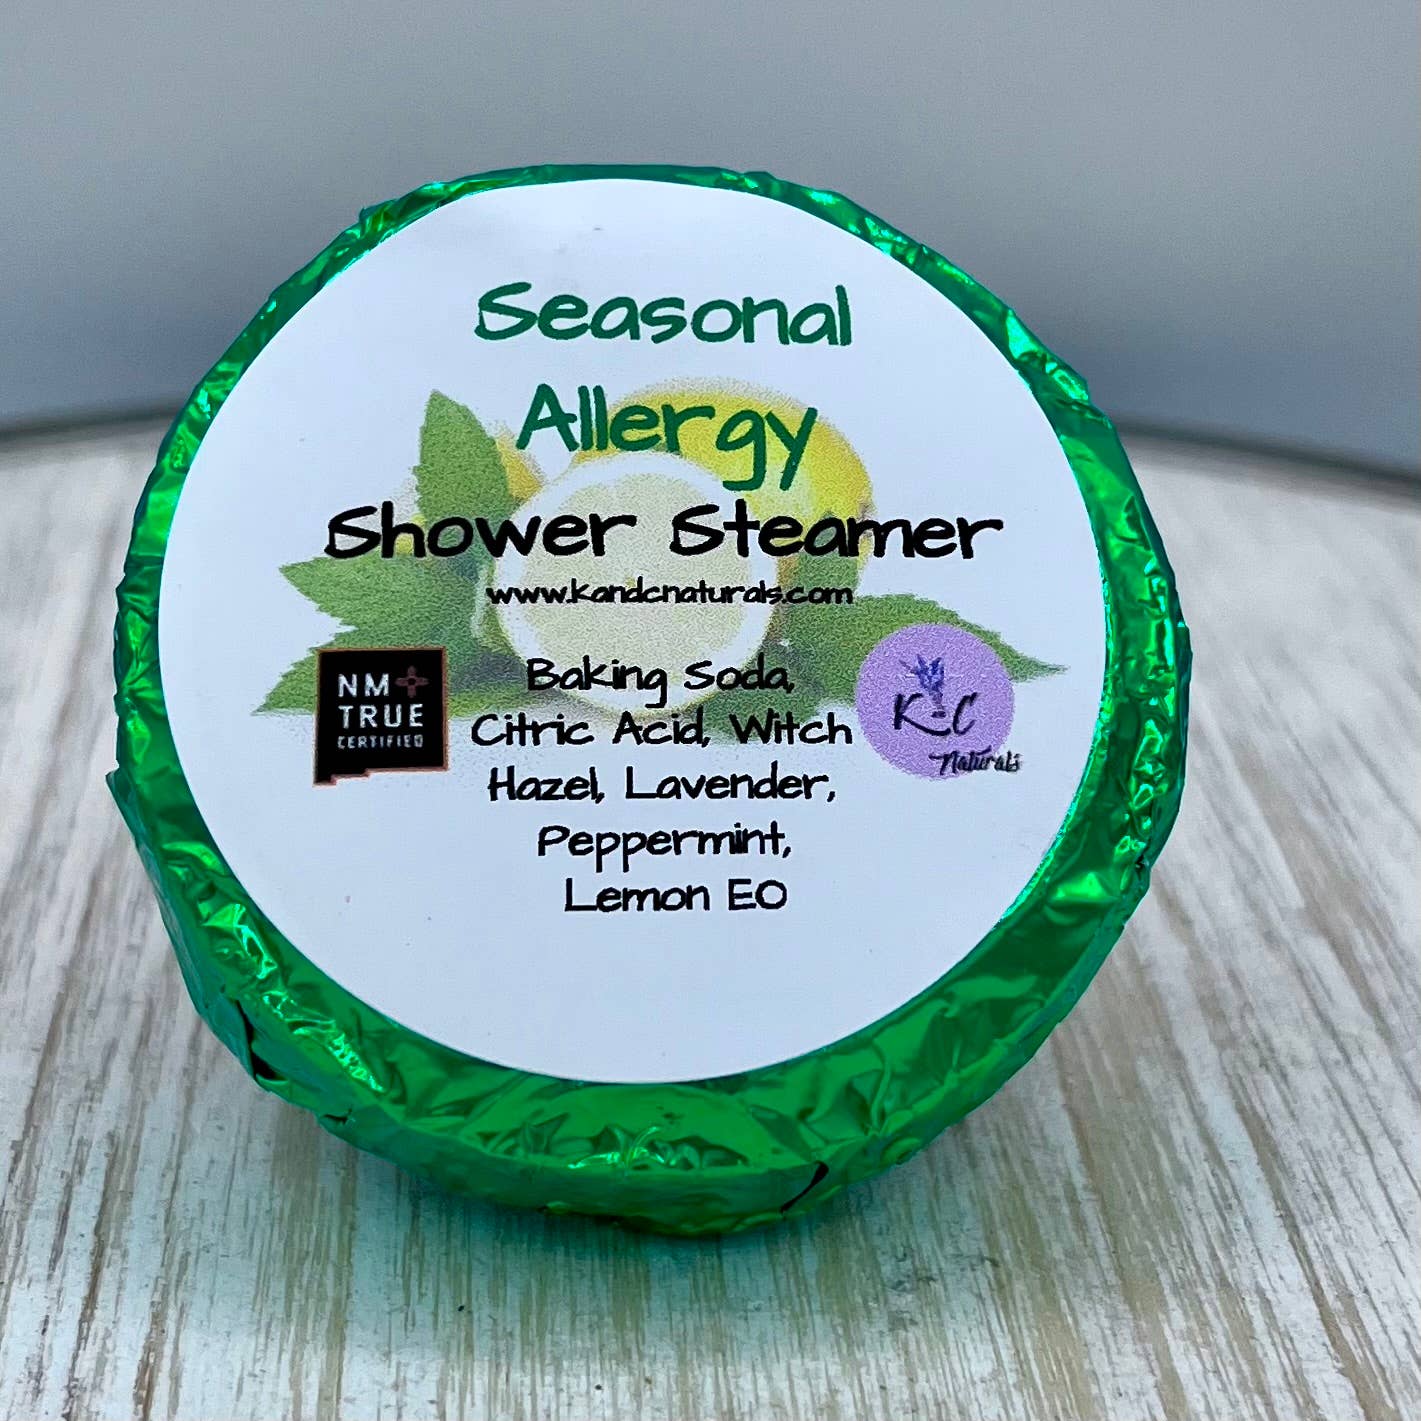 Seasonal Allergy Shower Steamer